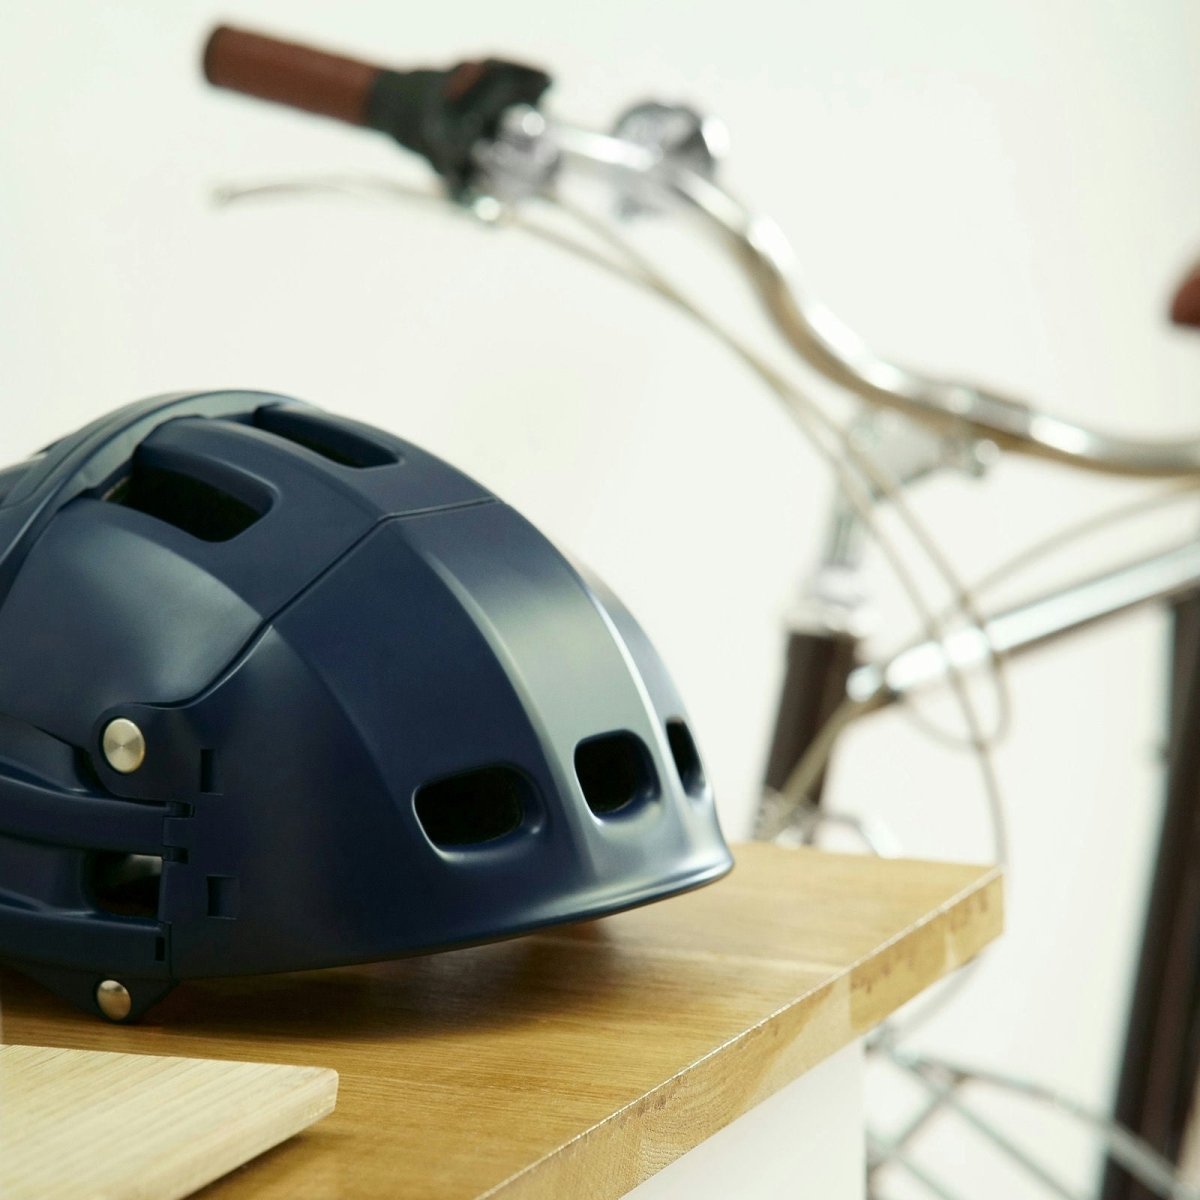 Overade - Achetez le casque vélo urbain idéal. Homologué. Design. Qualité